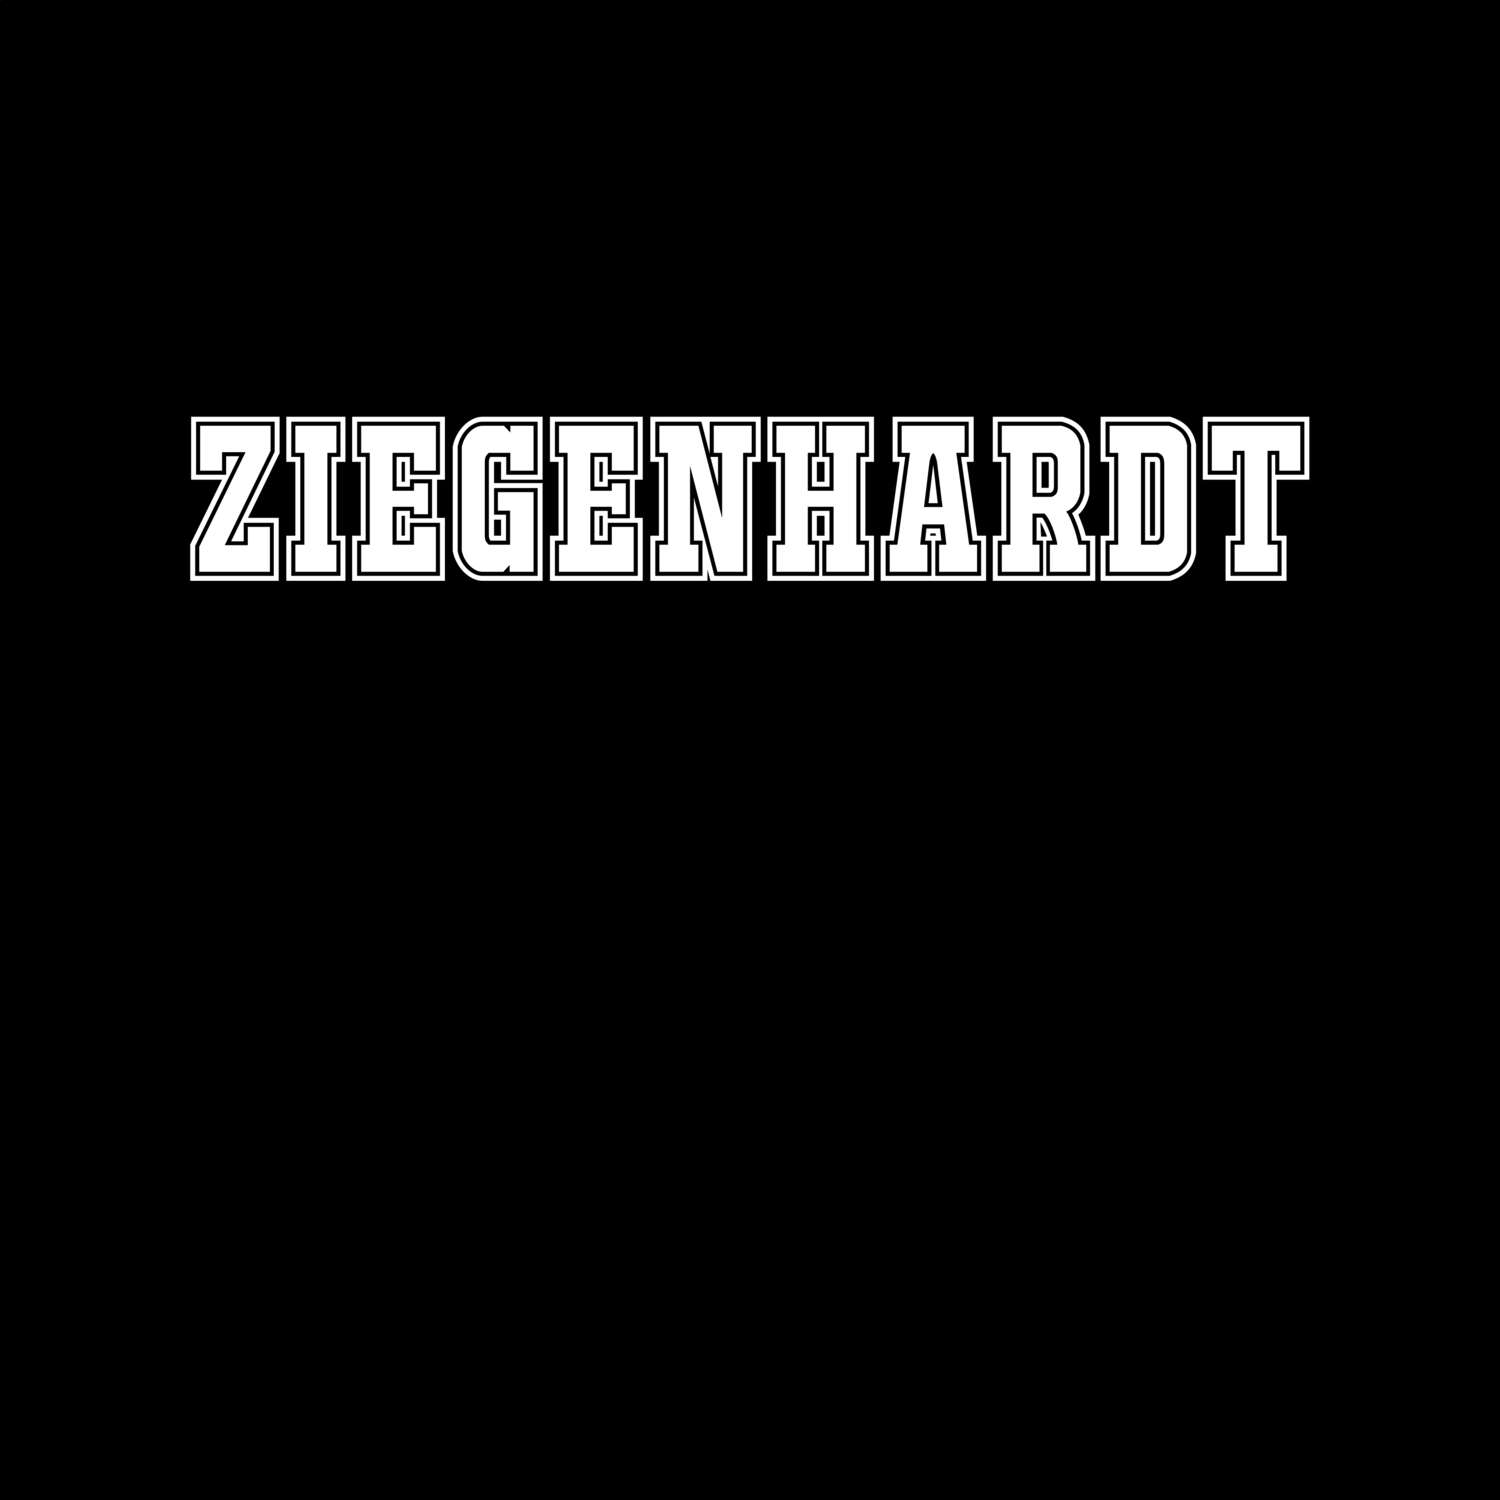 Ziegenhardt T-Shirt »Classic«